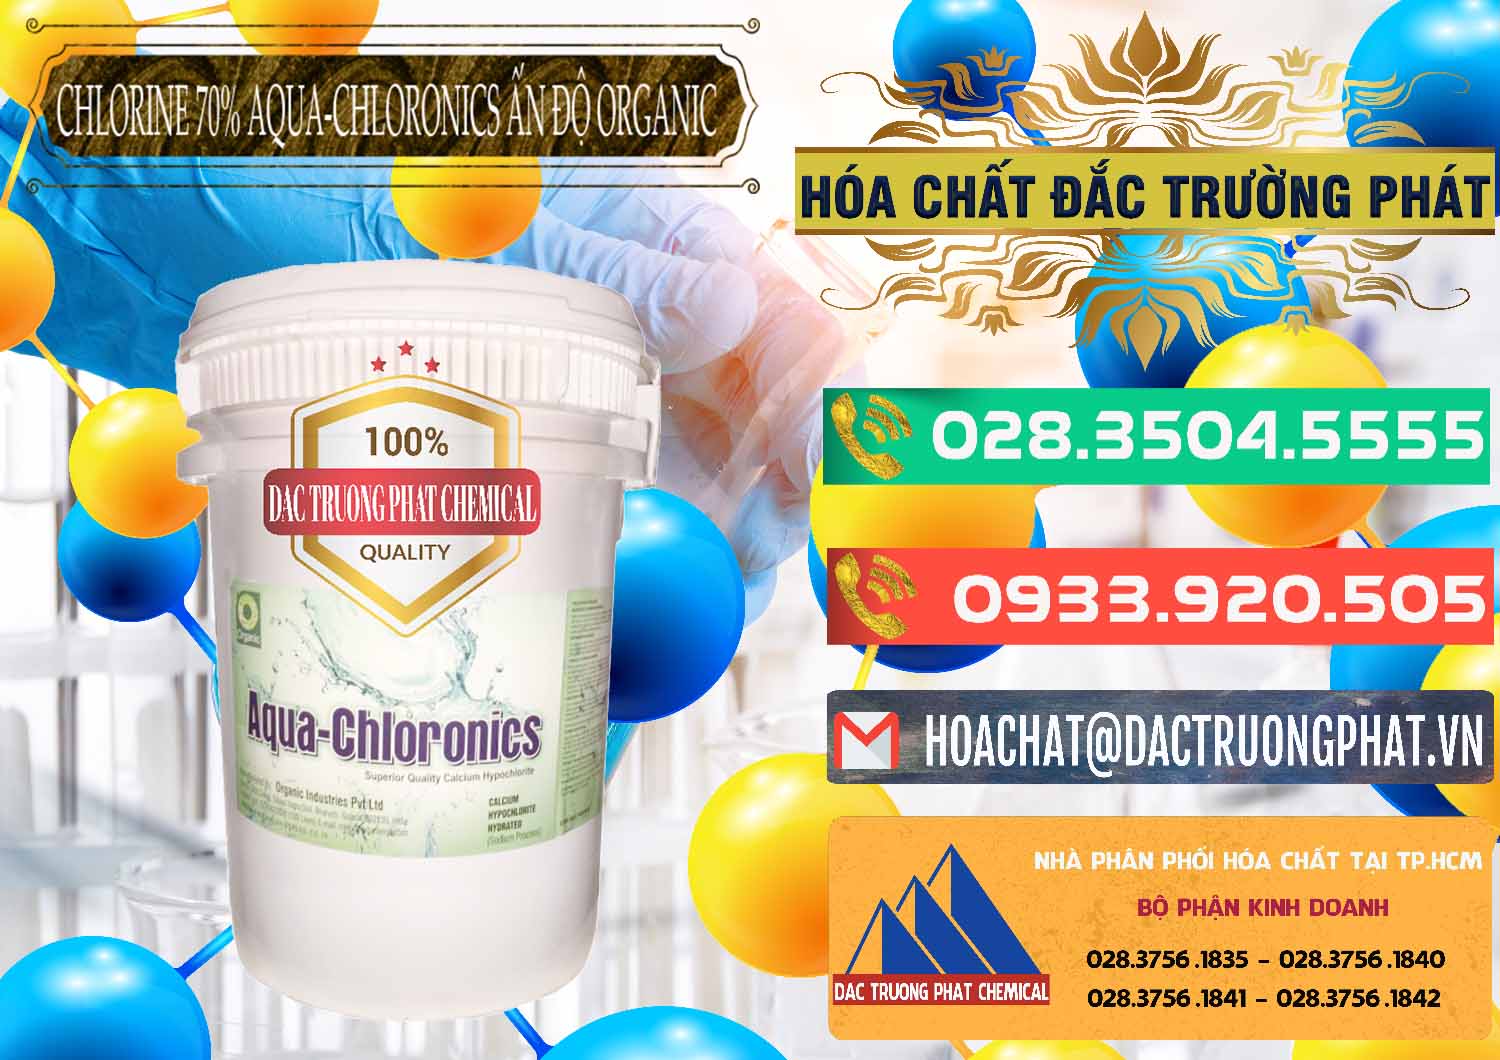 Công ty cung cấp ( bán ) Chlorine – Clorin 70% Aqua-Chloronics Ấn Độ Organic India - 0211 - Đơn vị cung cấp ( phân phối ) hóa chất tại TP.HCM - congtyhoachat.com.vn